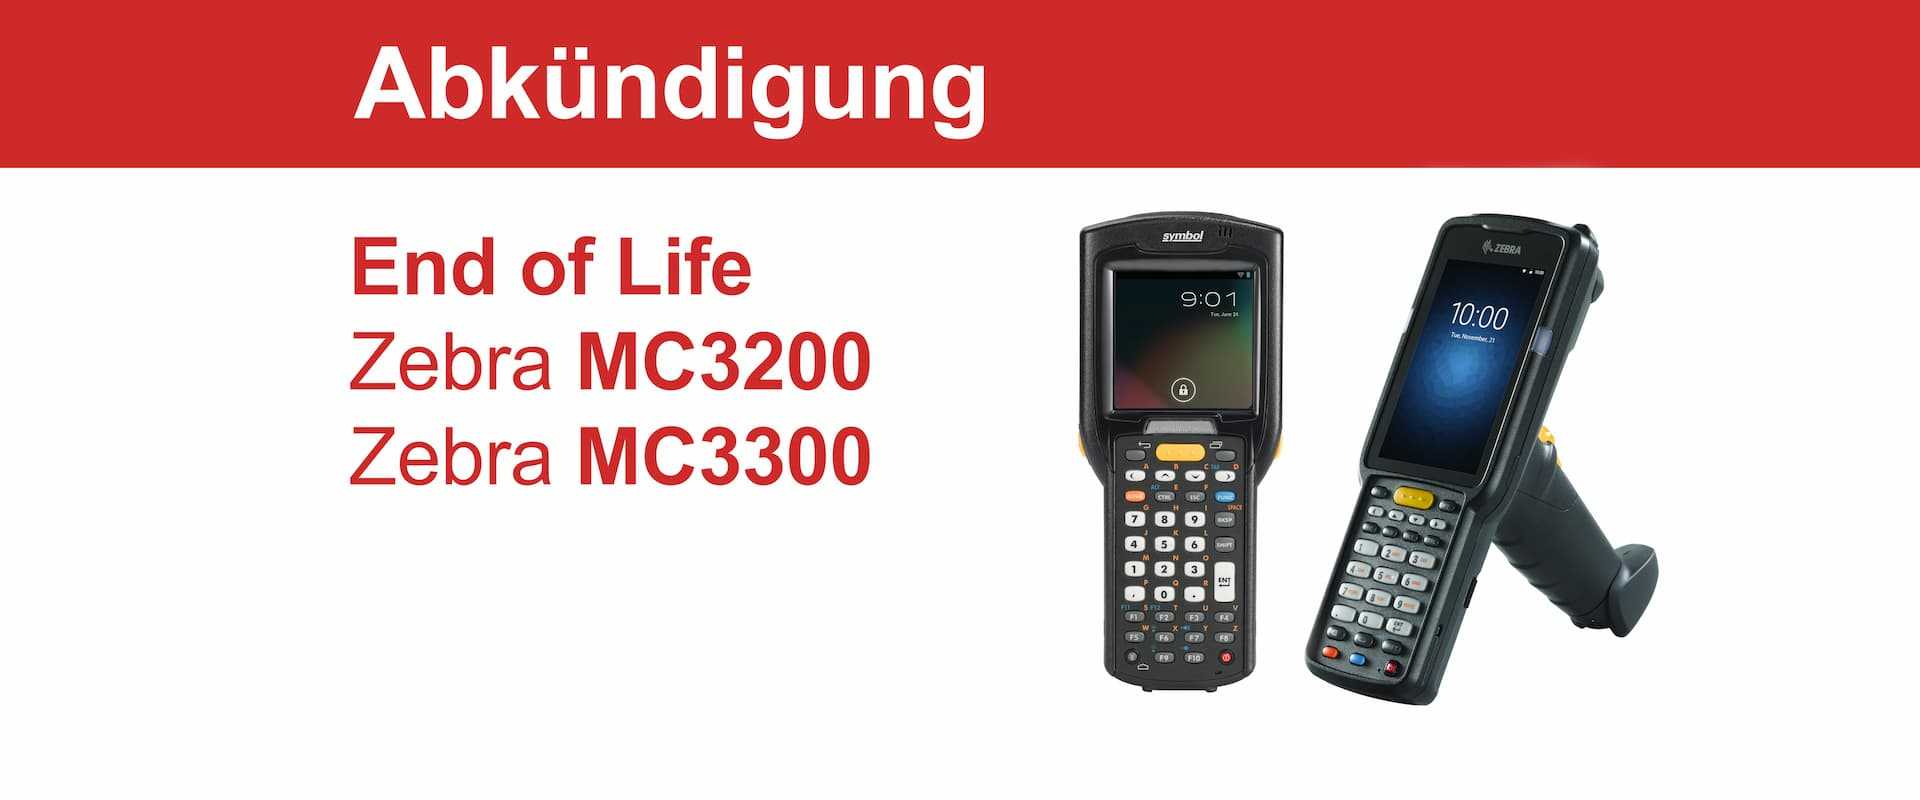 „End of Life“ für den Zebra MC3200 und Zebra MC3300